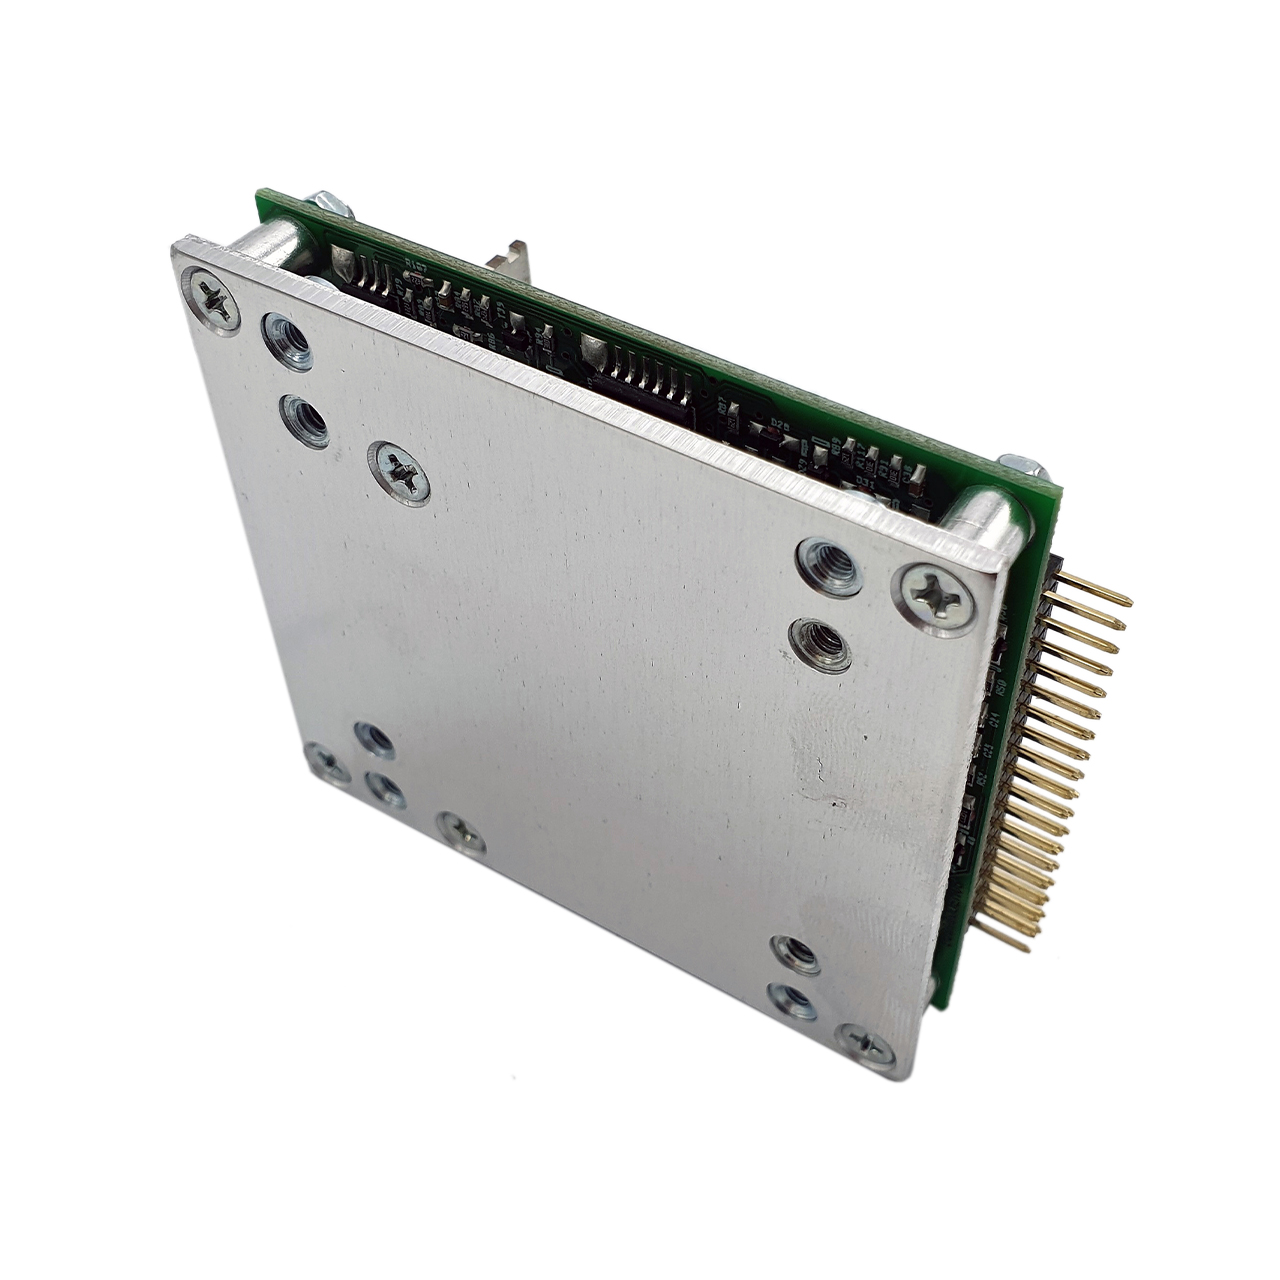 Hypex UcD™ 180 OEM amplifier module